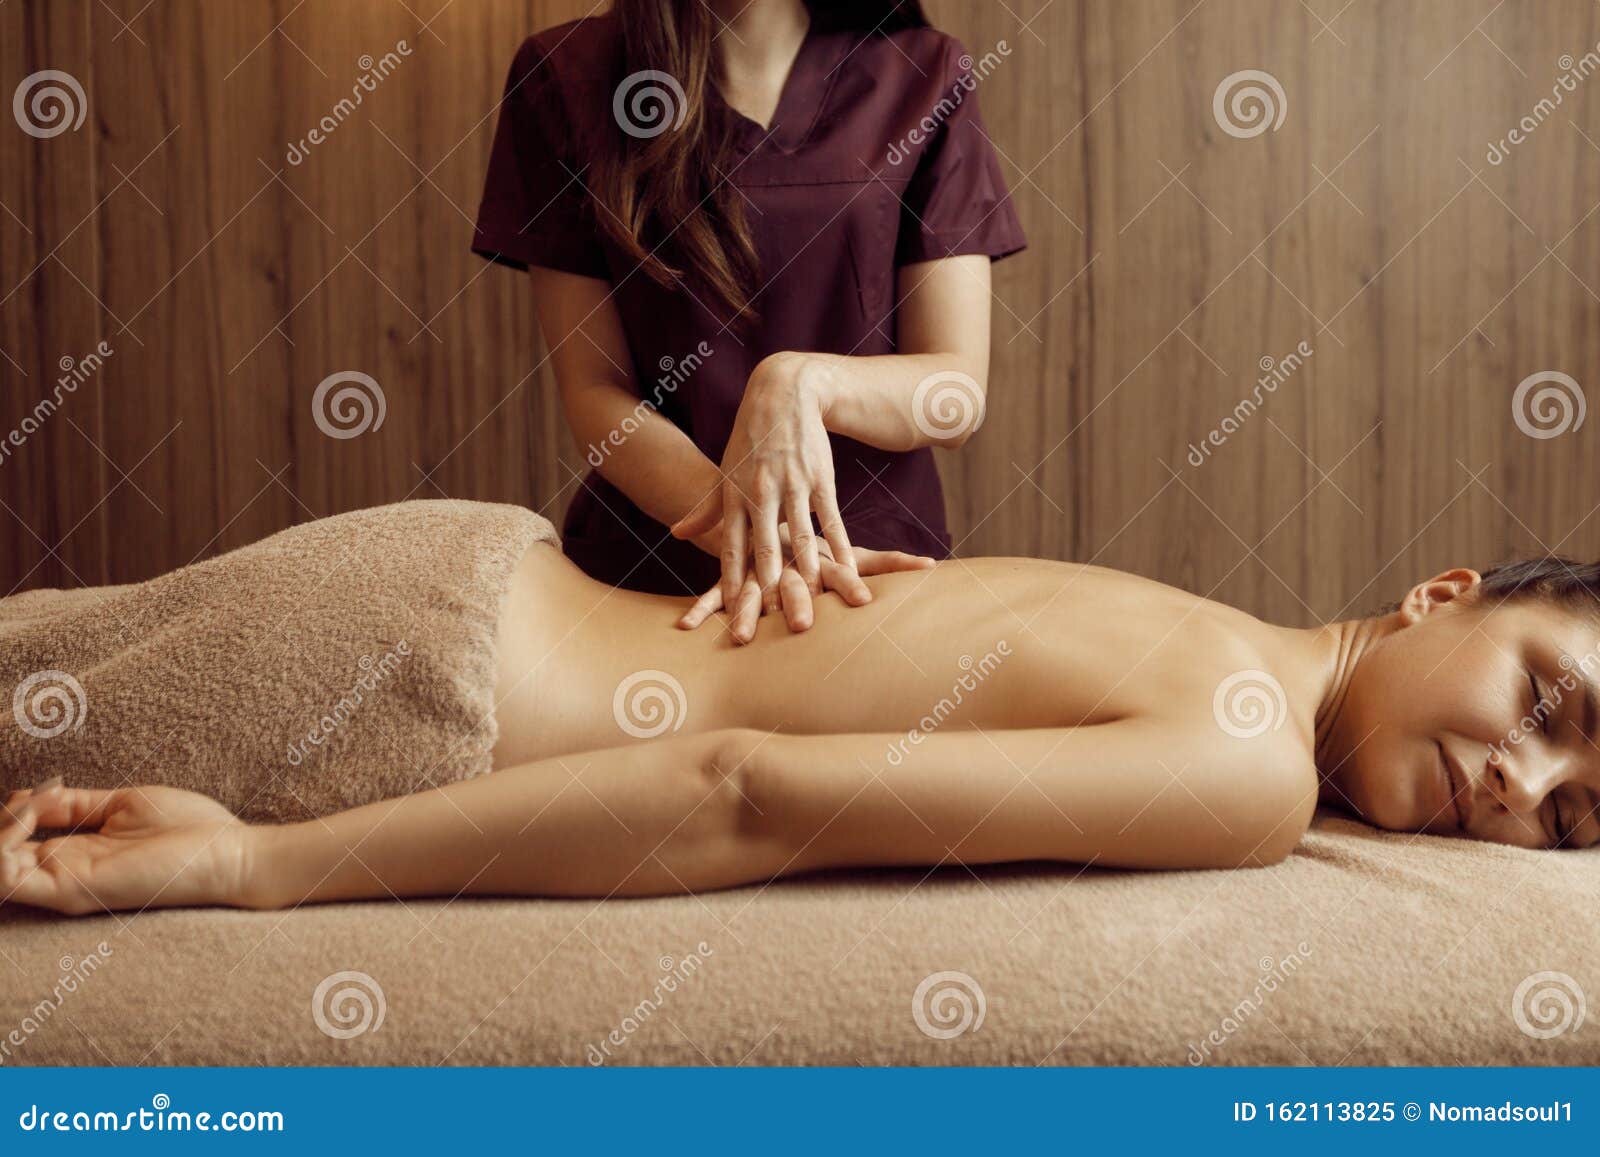 Hd Women Massage